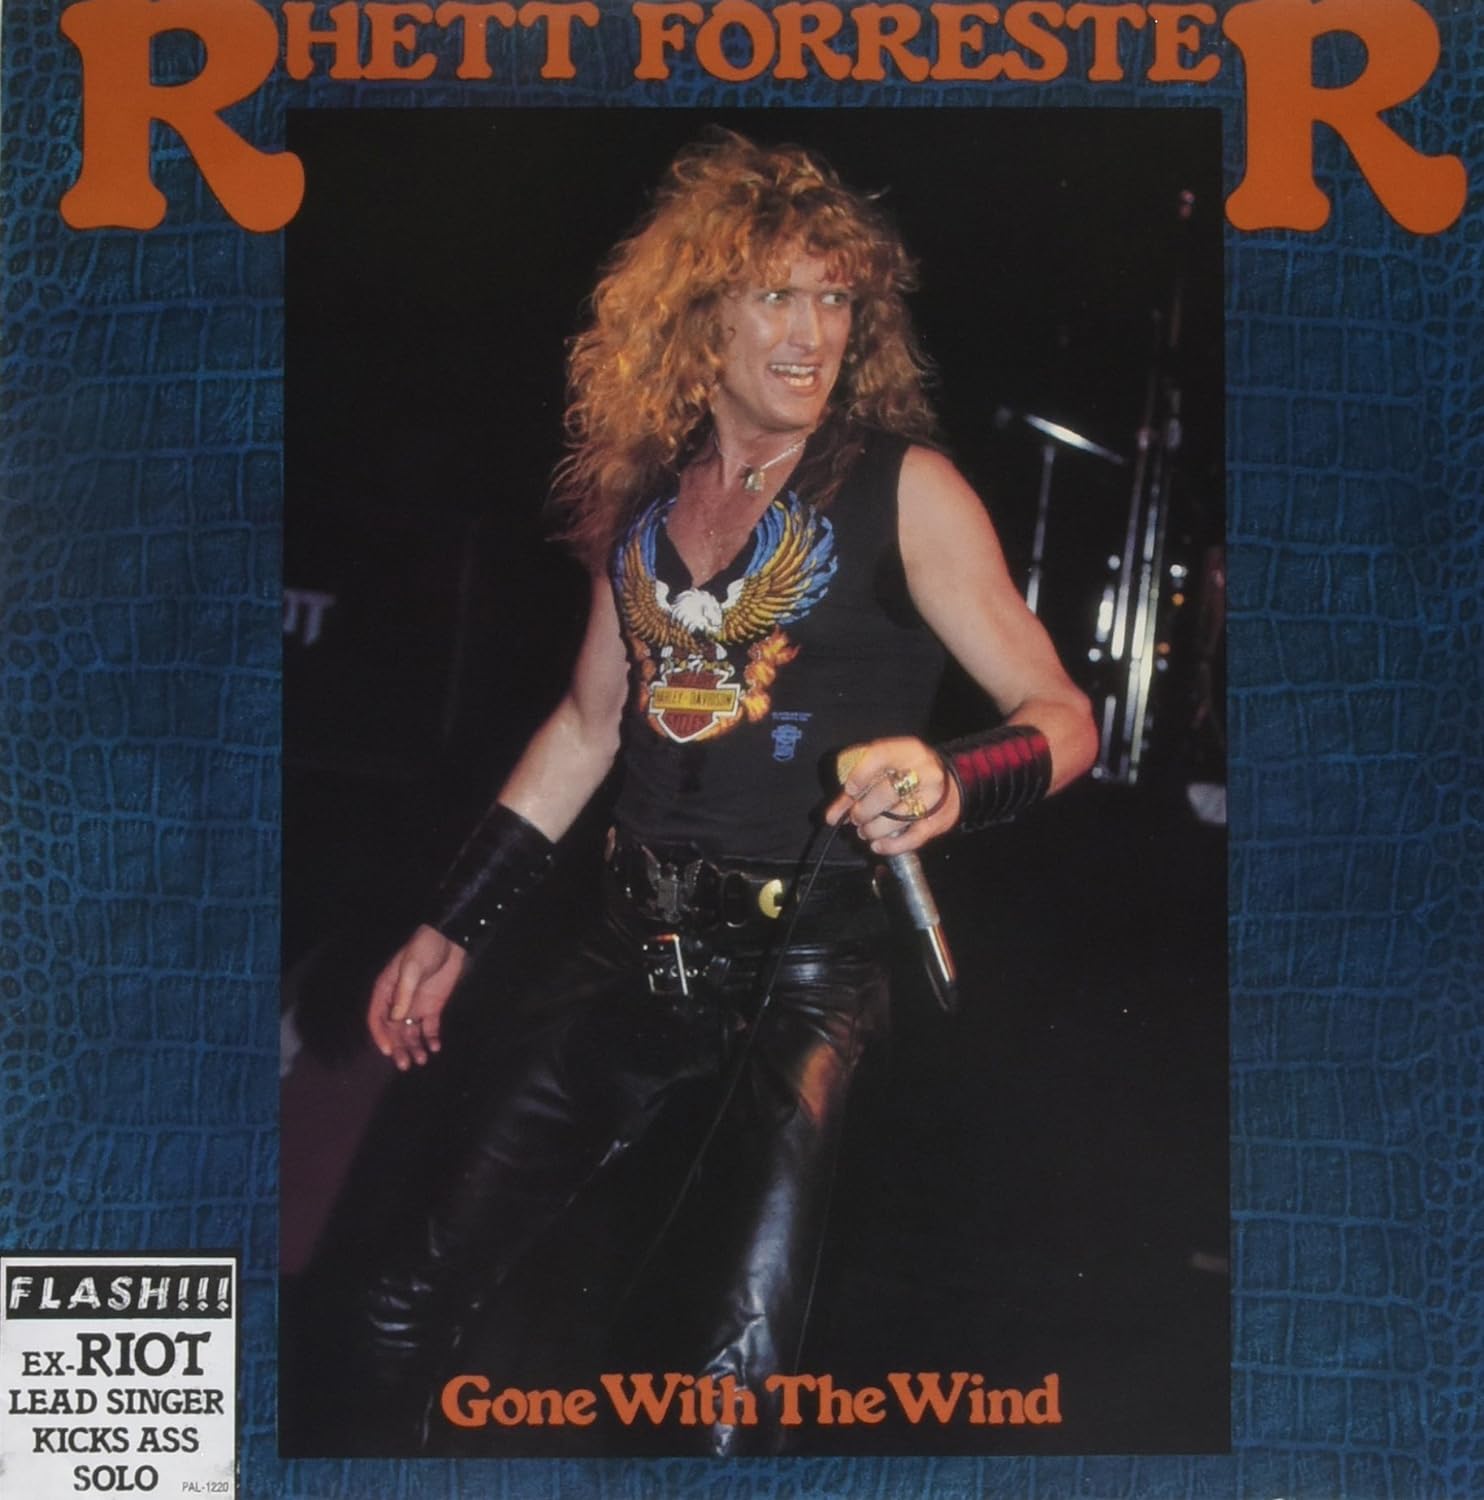 Forrester, Rhett - Gone With The Wind - Vinyl - New